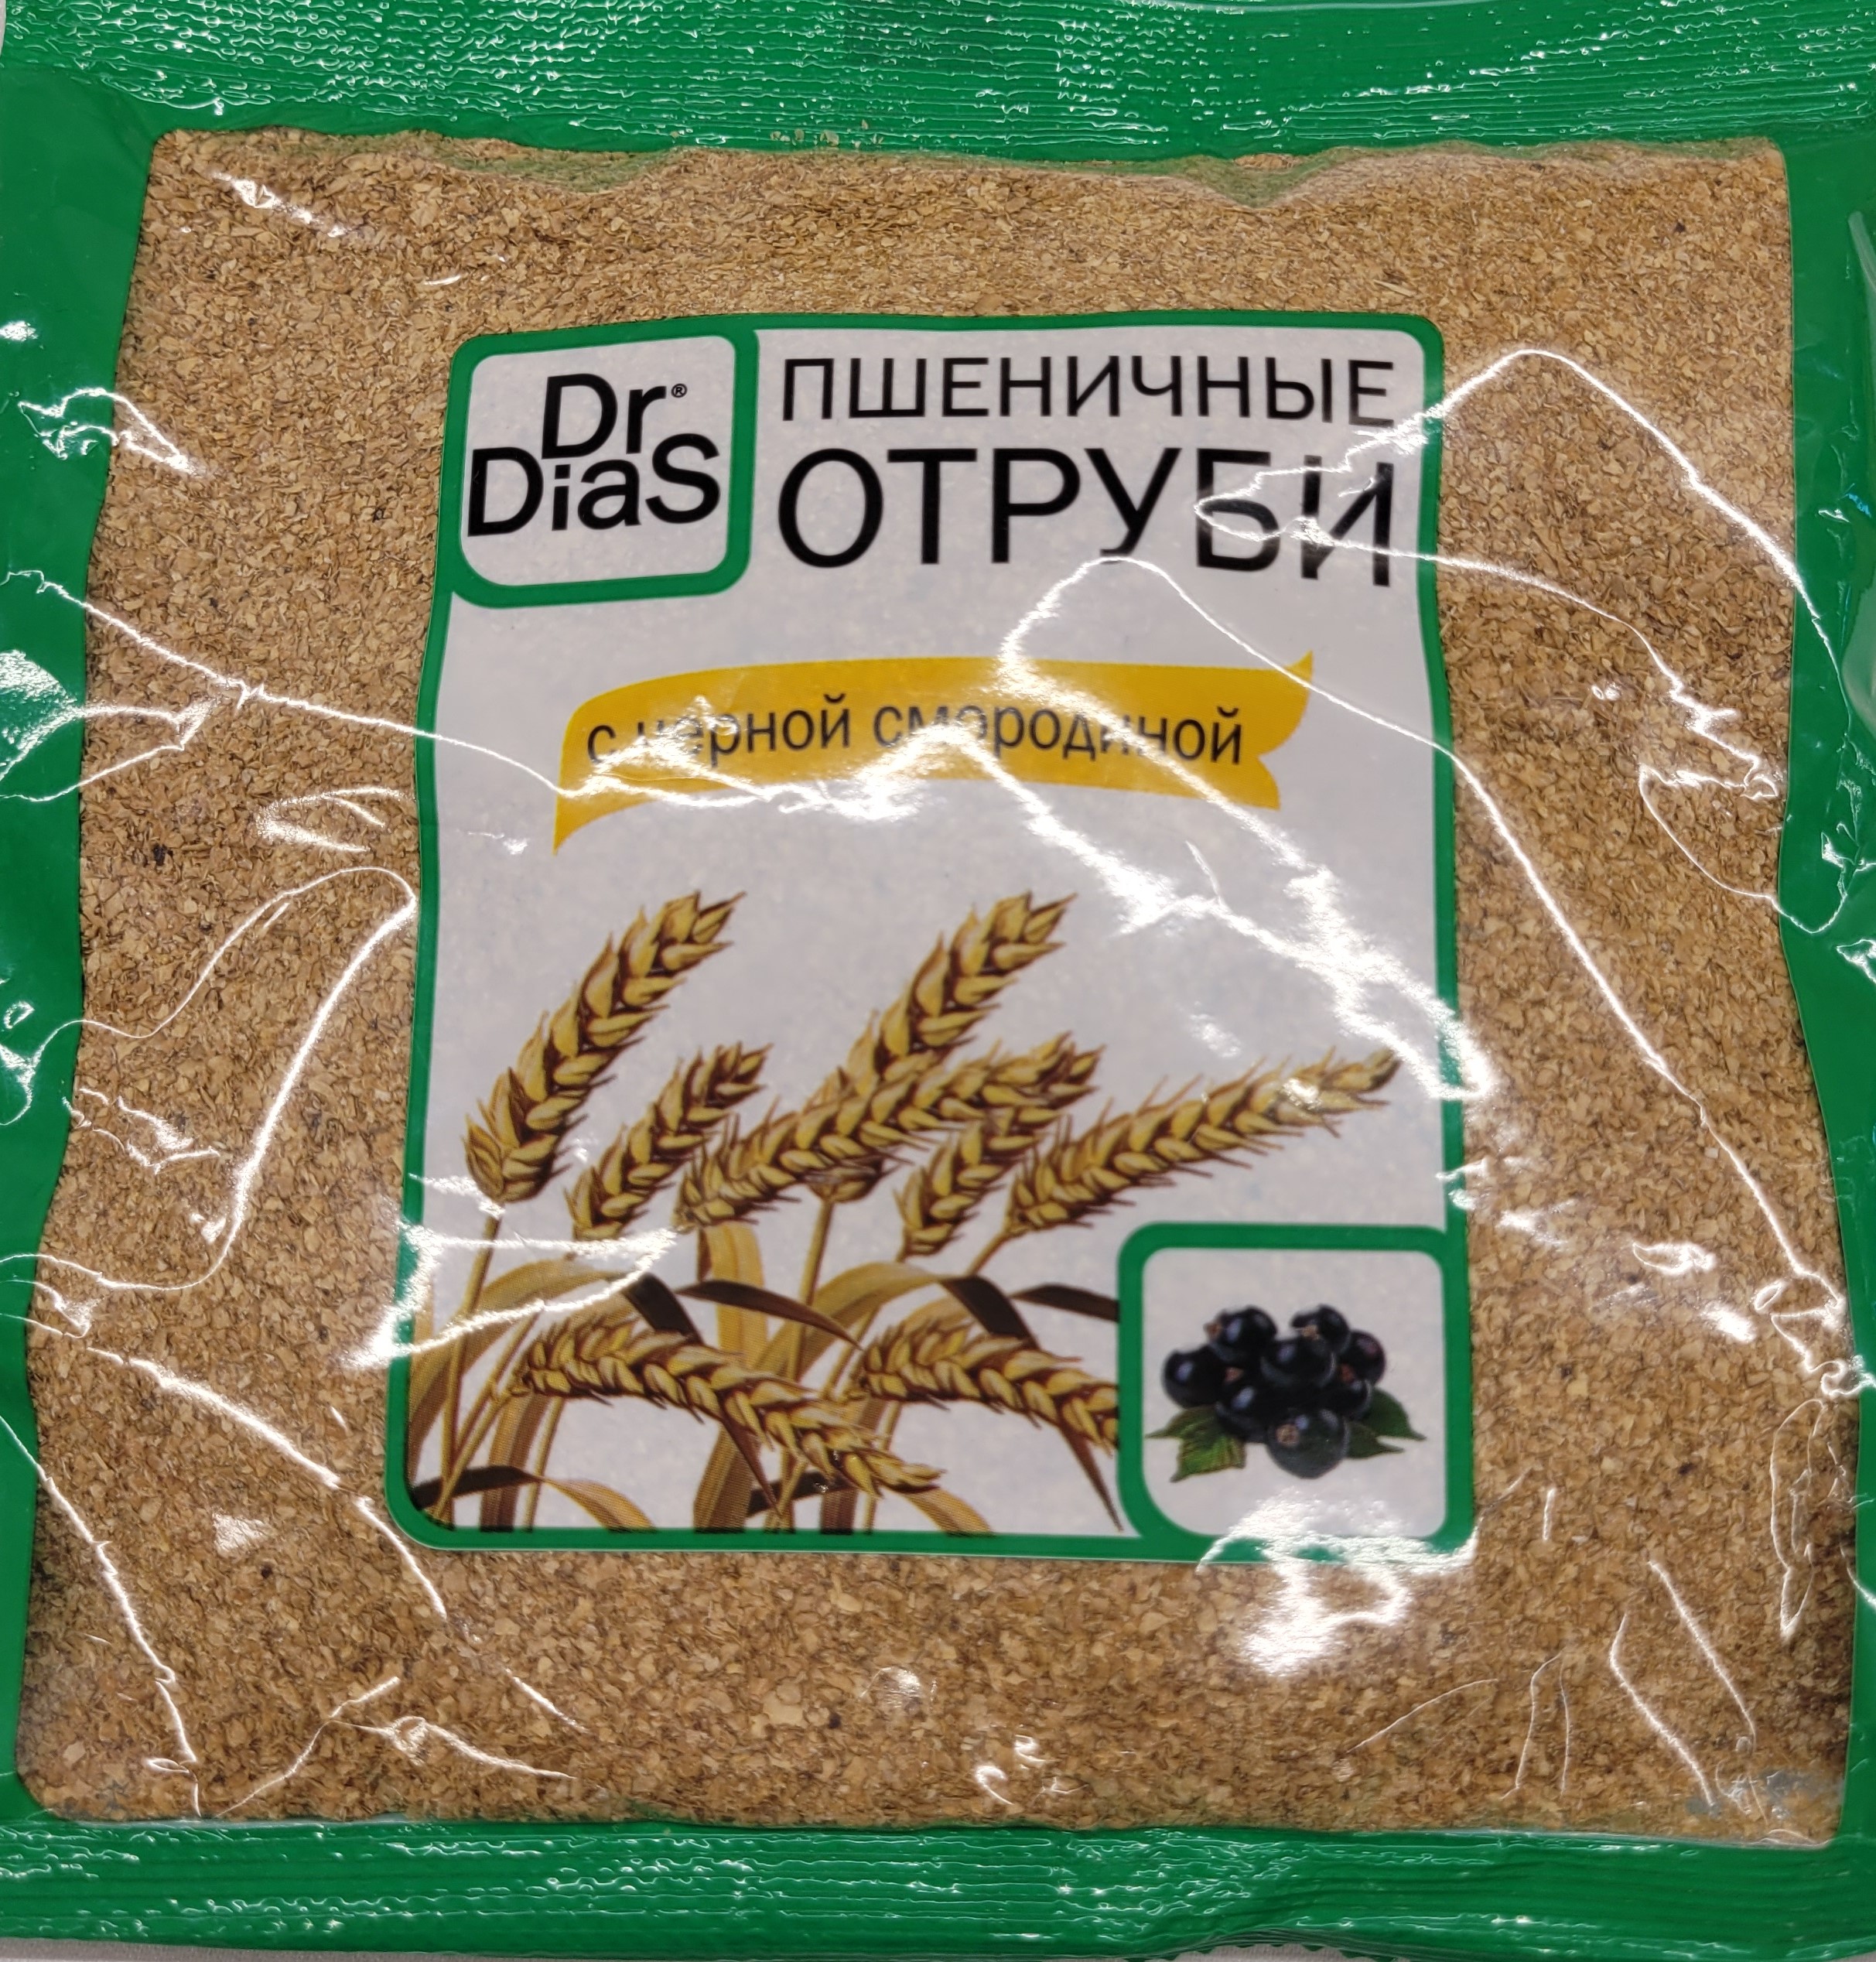 Отруби Пшеничные с Черной Смородиной 200гр пакет